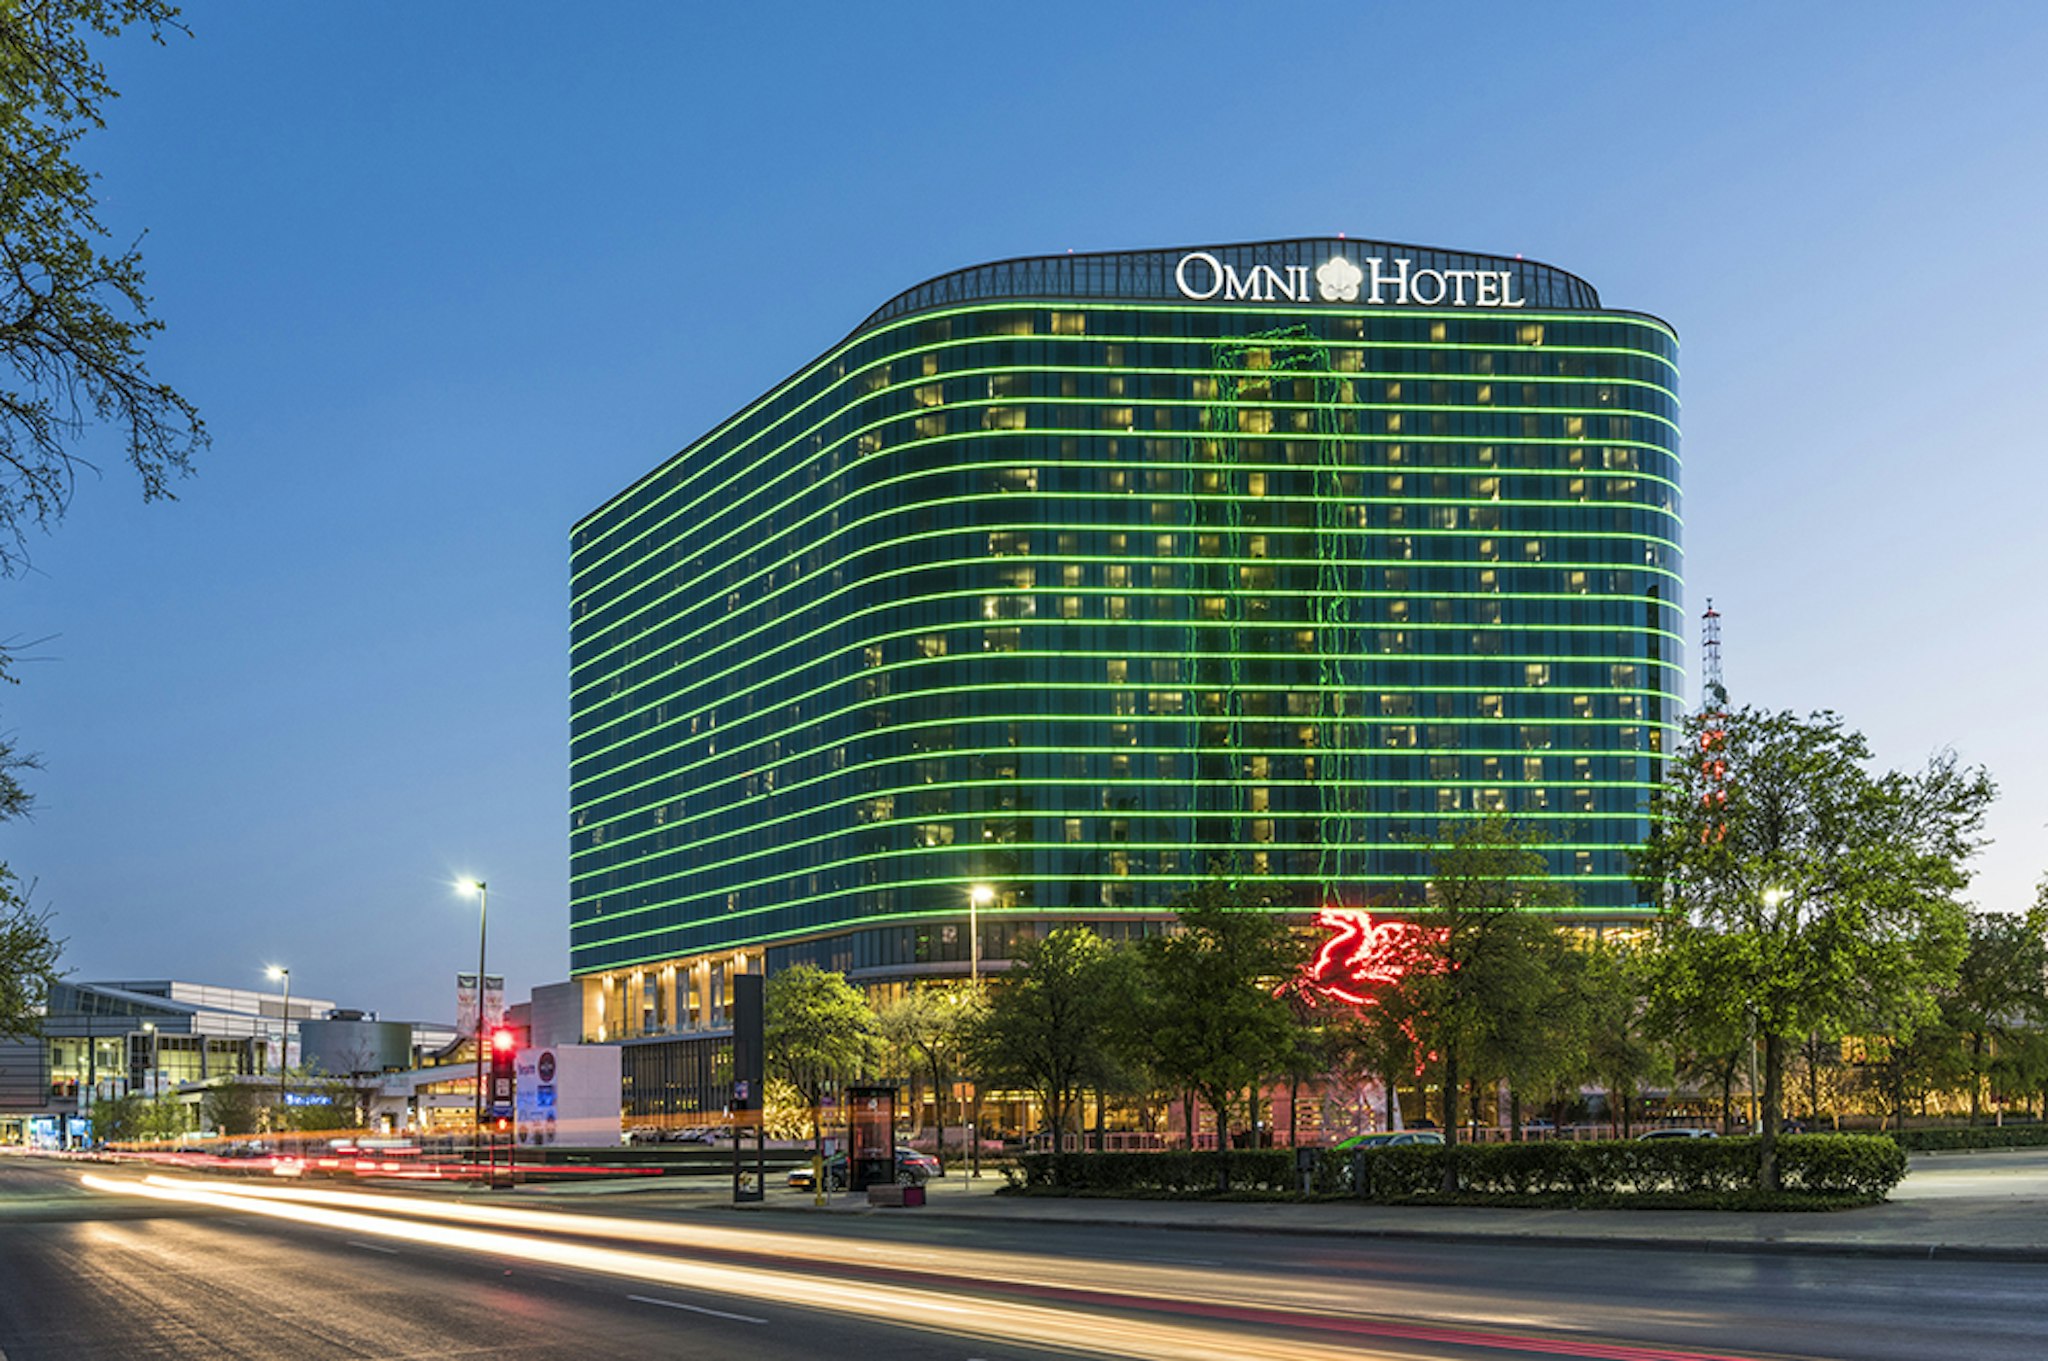 Omni Dallas | Official Headquarter Hotel